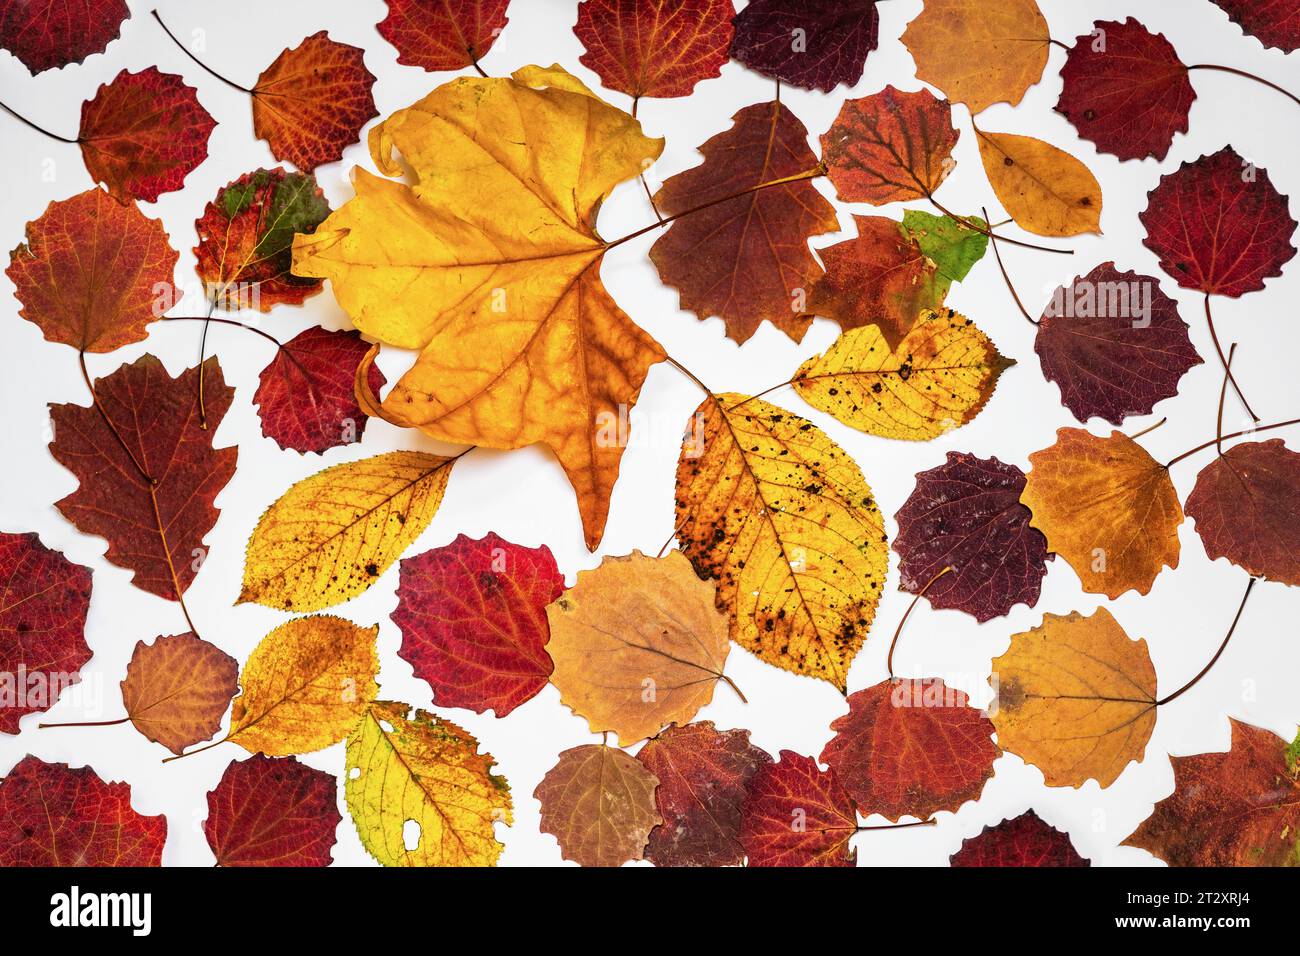 Herbst lebhafte Farbgruppe von Baumblättern (Aspen, Eiche, Buche) auf weißem Hintergrund, nahtlos, Nahaufnahme. Kann als Tapete, Geschenkpapier oder Schablone verwendet werden Stockfoto